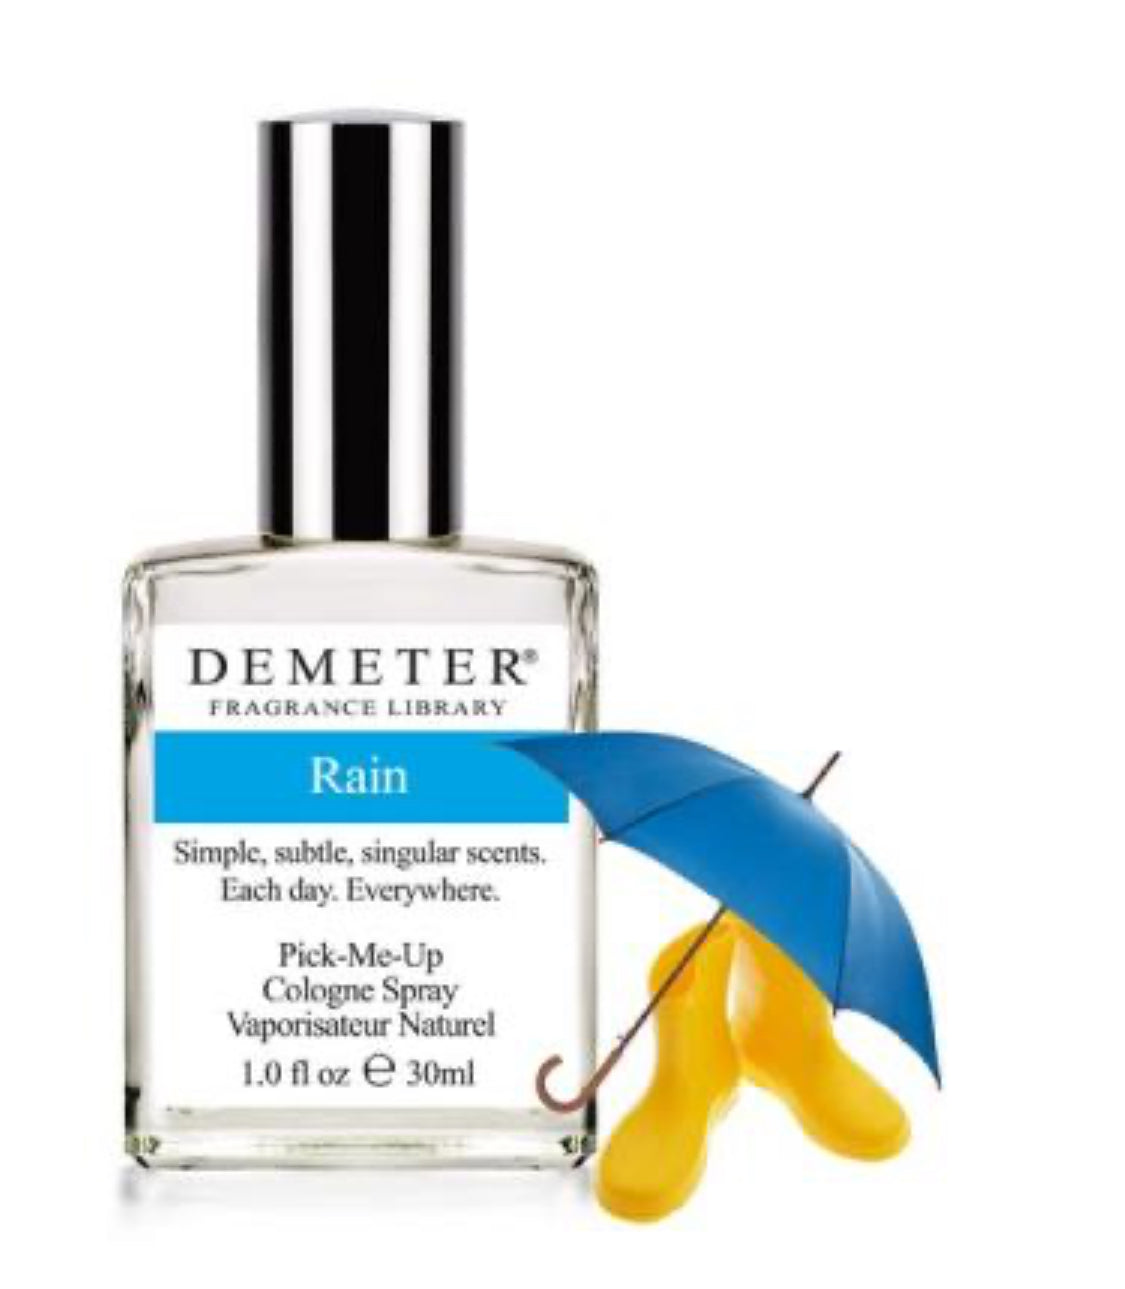 Demeter 雨 Rain 情境香水 (30ml)